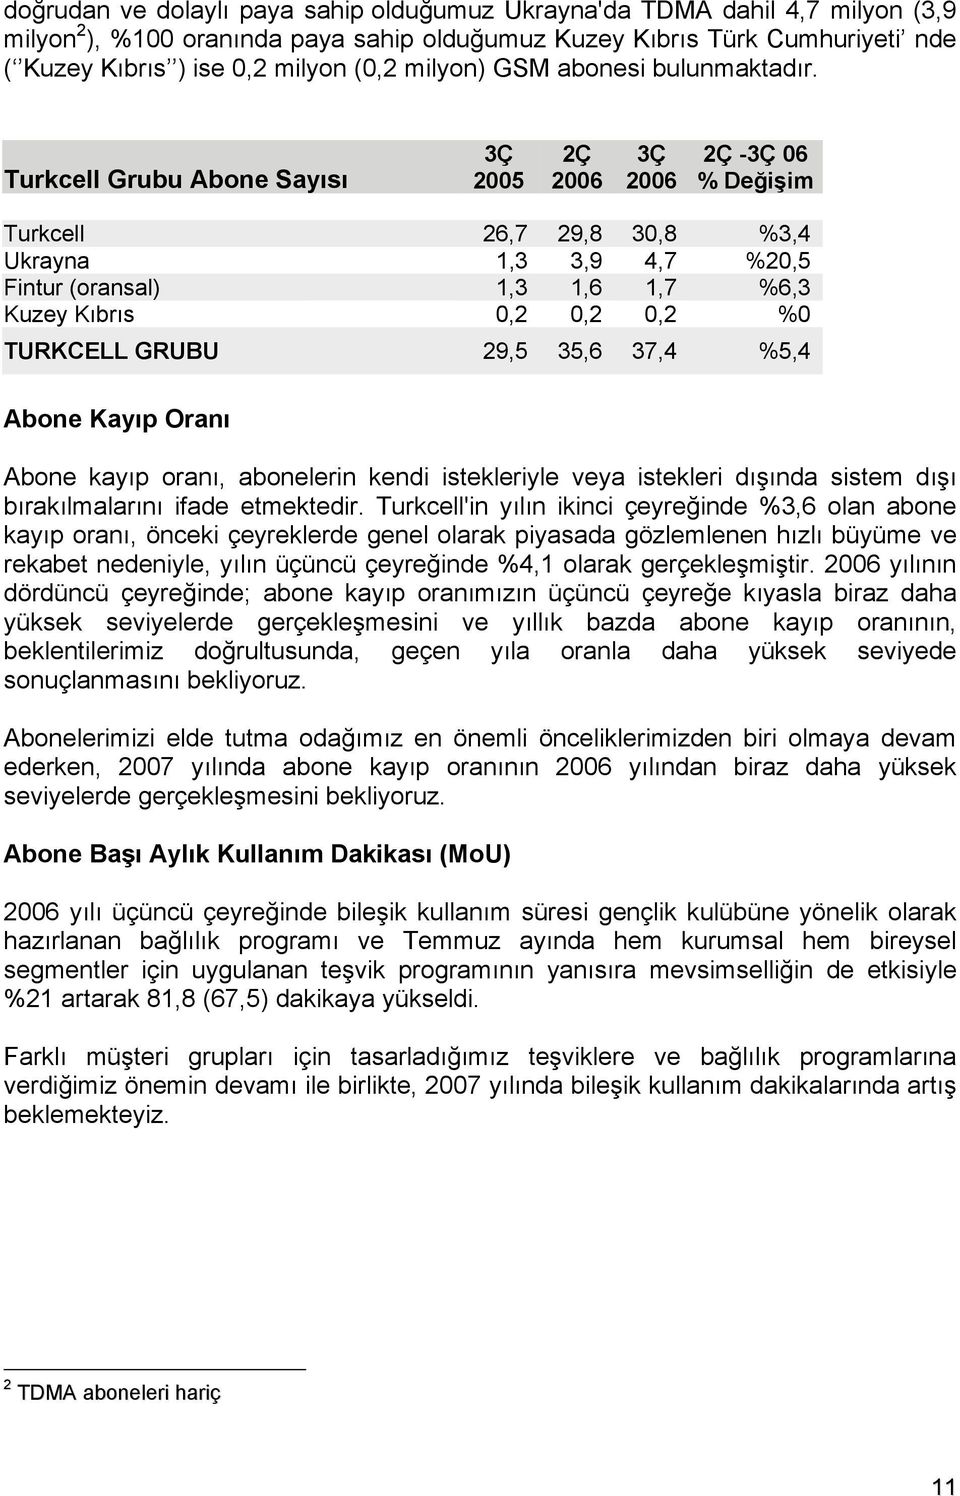 Turkcell Grubu Abone Sayısı 3Ç 2005 2Ç 2006 3Ç 2006 2Ç -3Ç 06 % Değişim Turkcell 26,7 29,8 30,8 %3,4 Ukrayna 1,3 3,9 4,7 %20,5 Fintur (oransal) 1,3 1,6 1,7 %6,3 Kuzey Kıbrıs 0,2 0,2 0,2 %0 TURKCELL